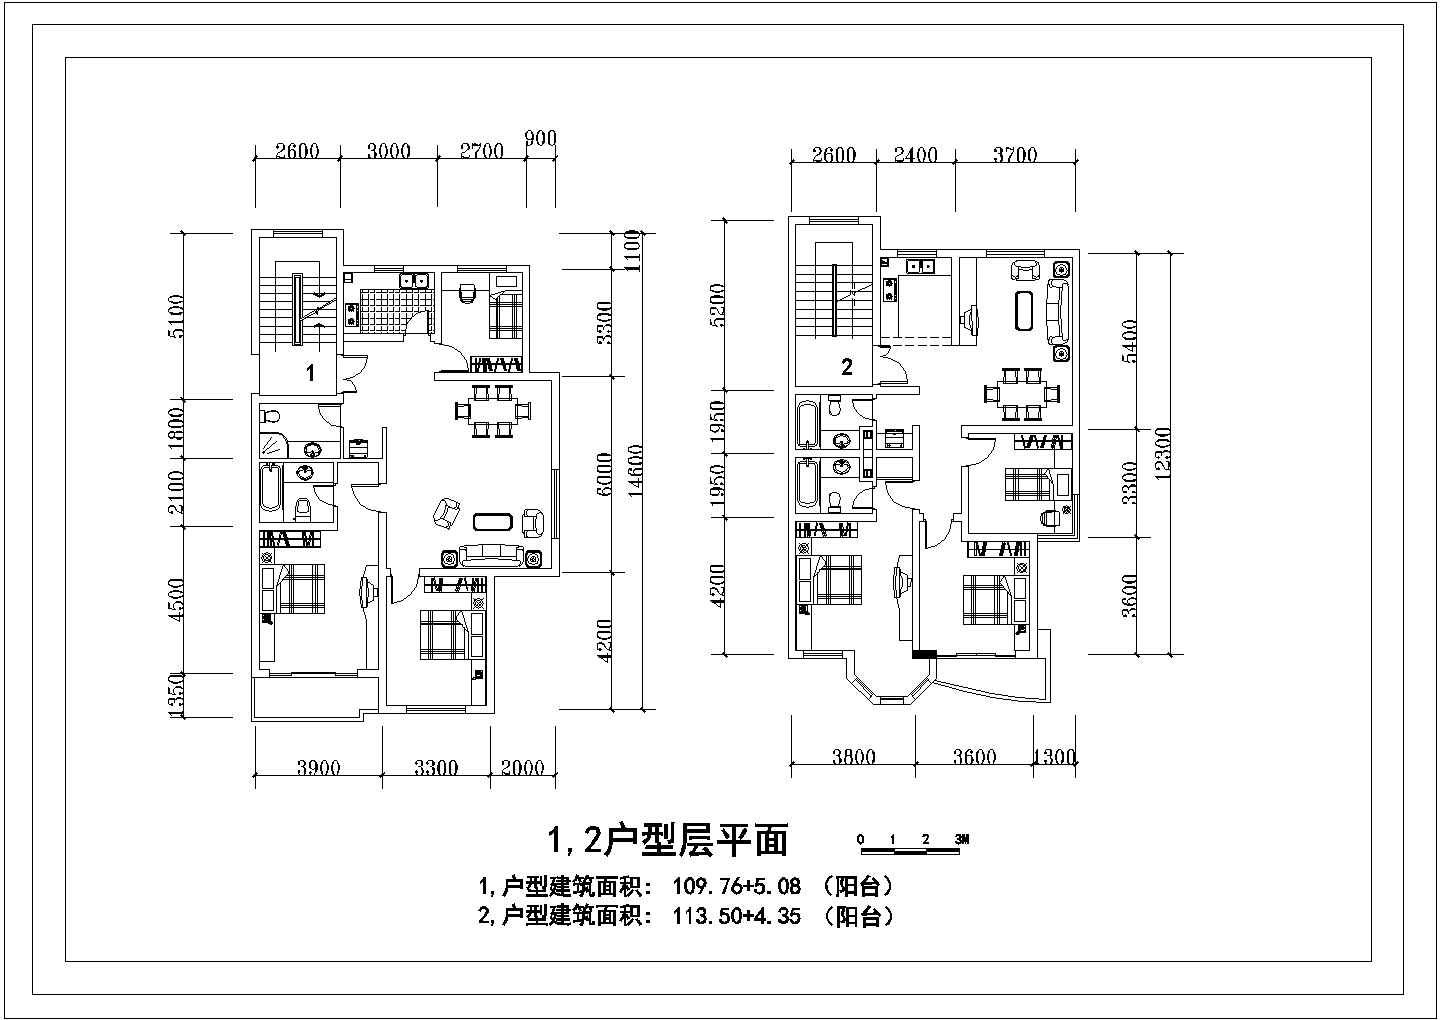 某3室2厅2卫1阳台户型设计CAD构造详细图【面积114.84平米 117.85平米】